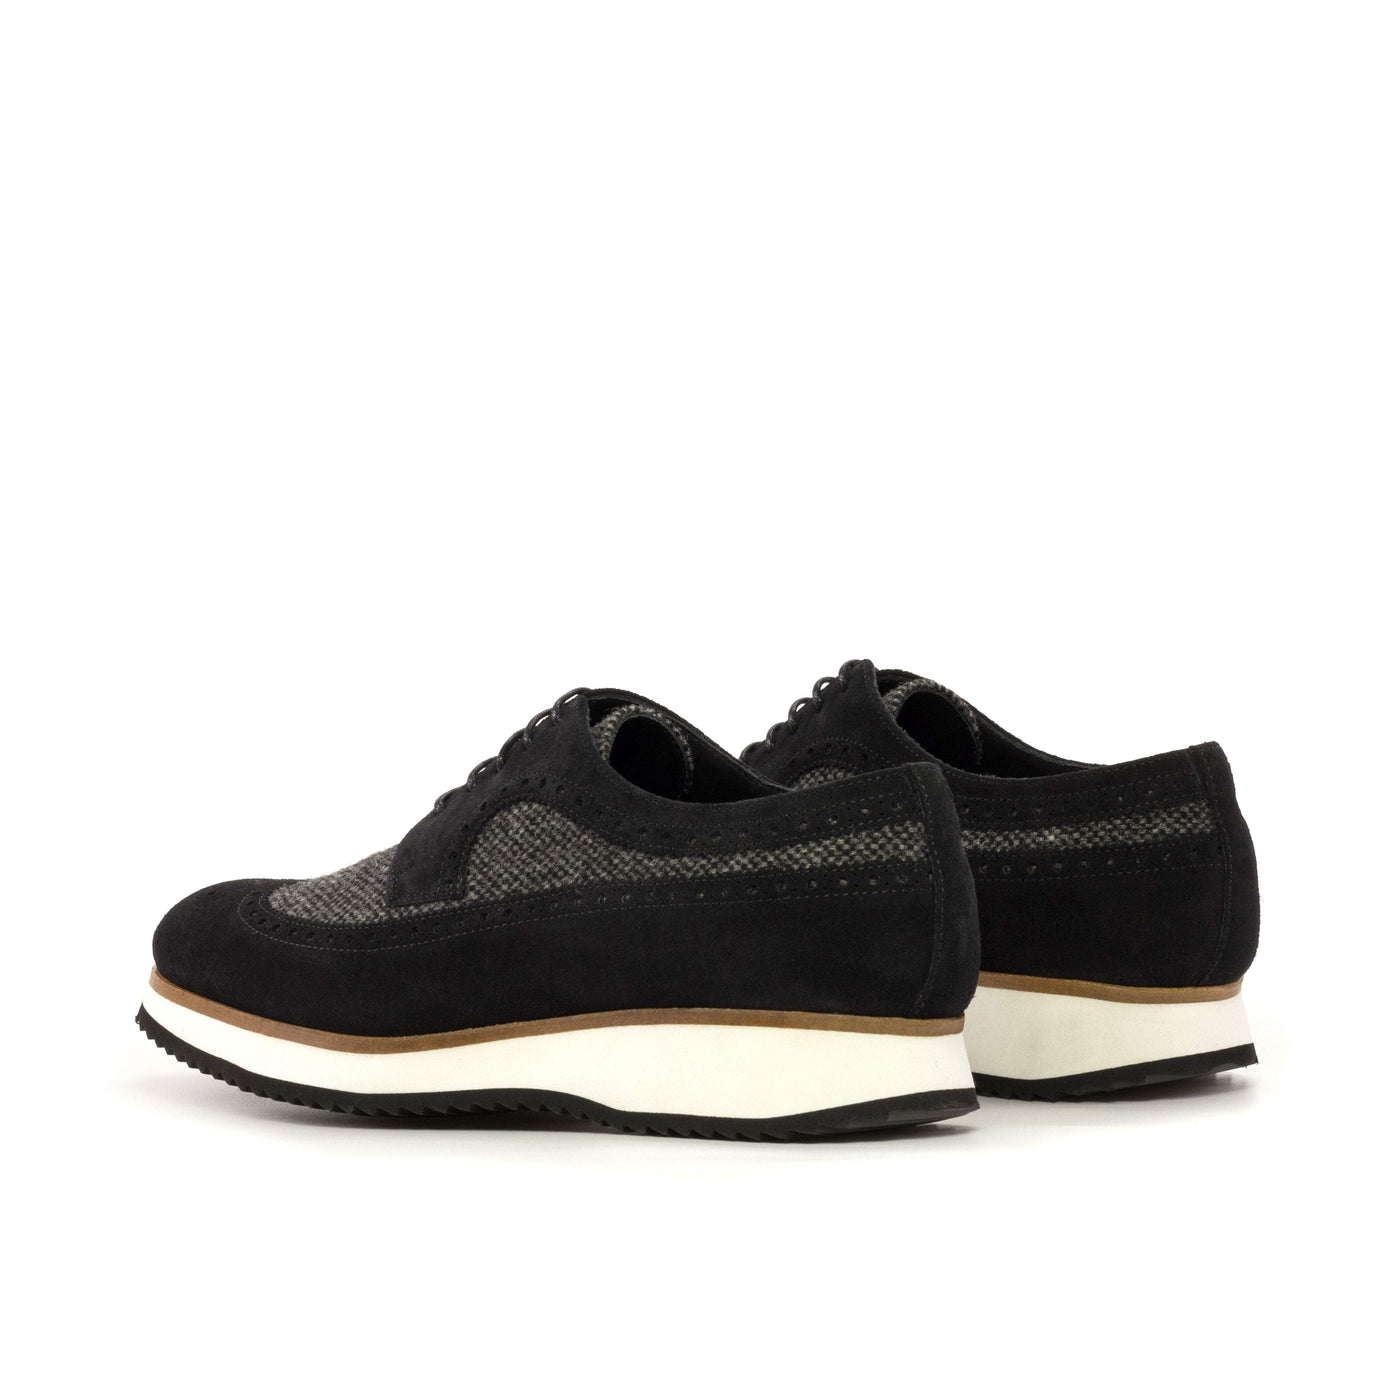 Men's Longwing Blucher Shoes Leather Grey Black 5307 4- MERRIMIUM